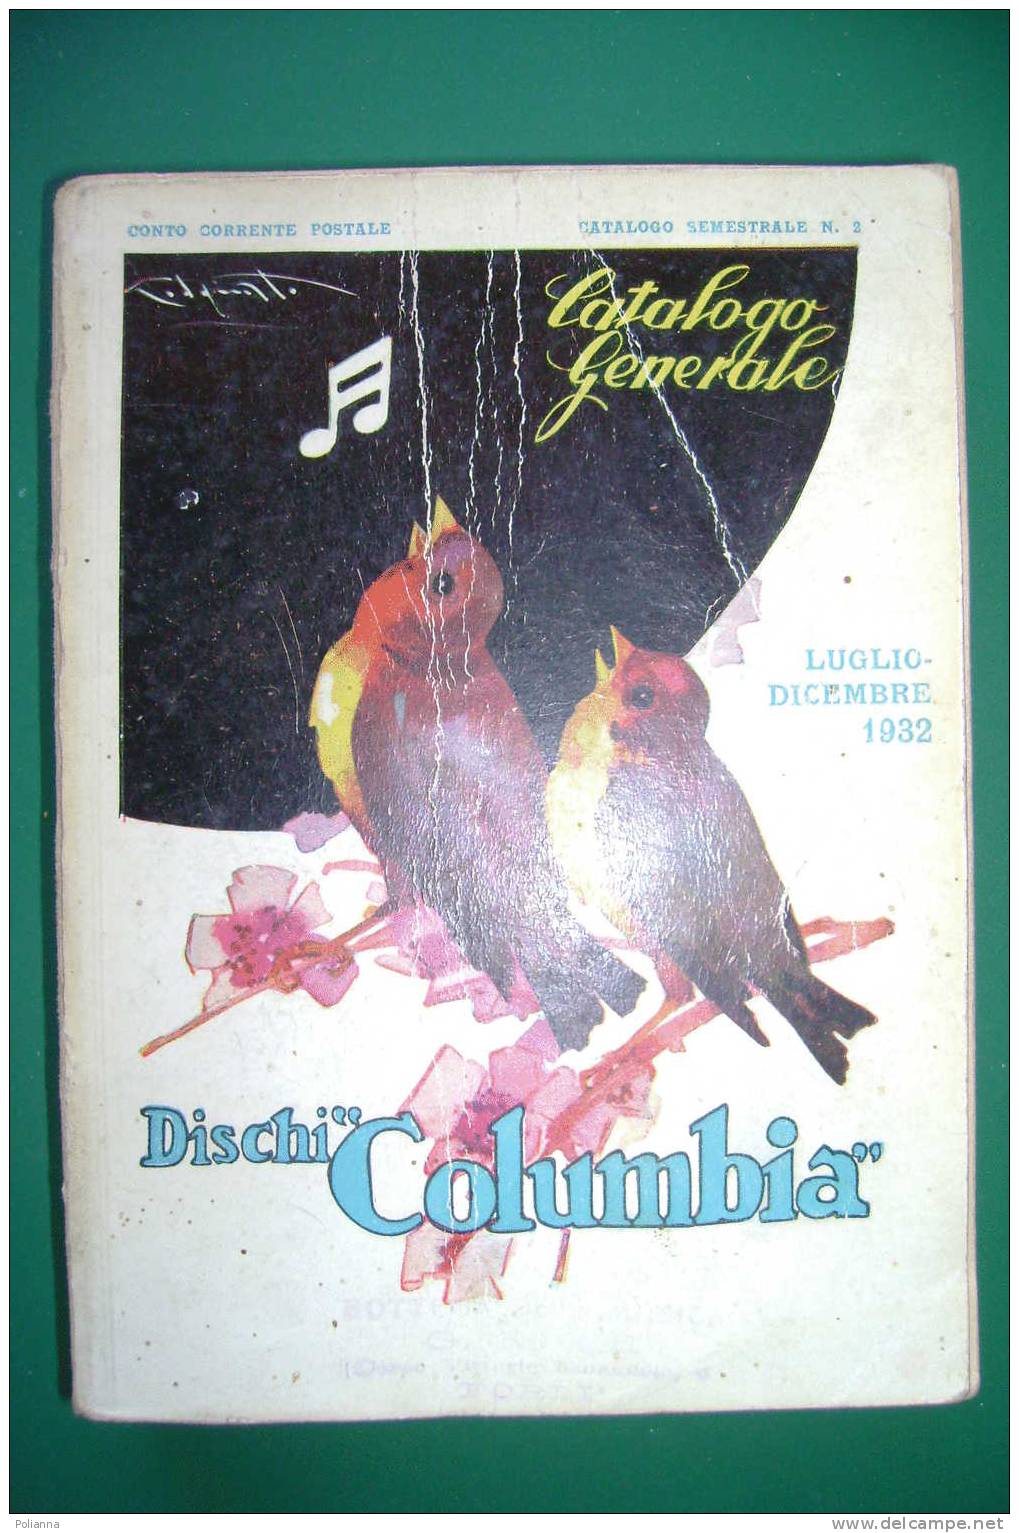 PDM/17 CATALOGO GENERALE 1932-DISCHI COLUMBIA/ill. Codognato - Musica